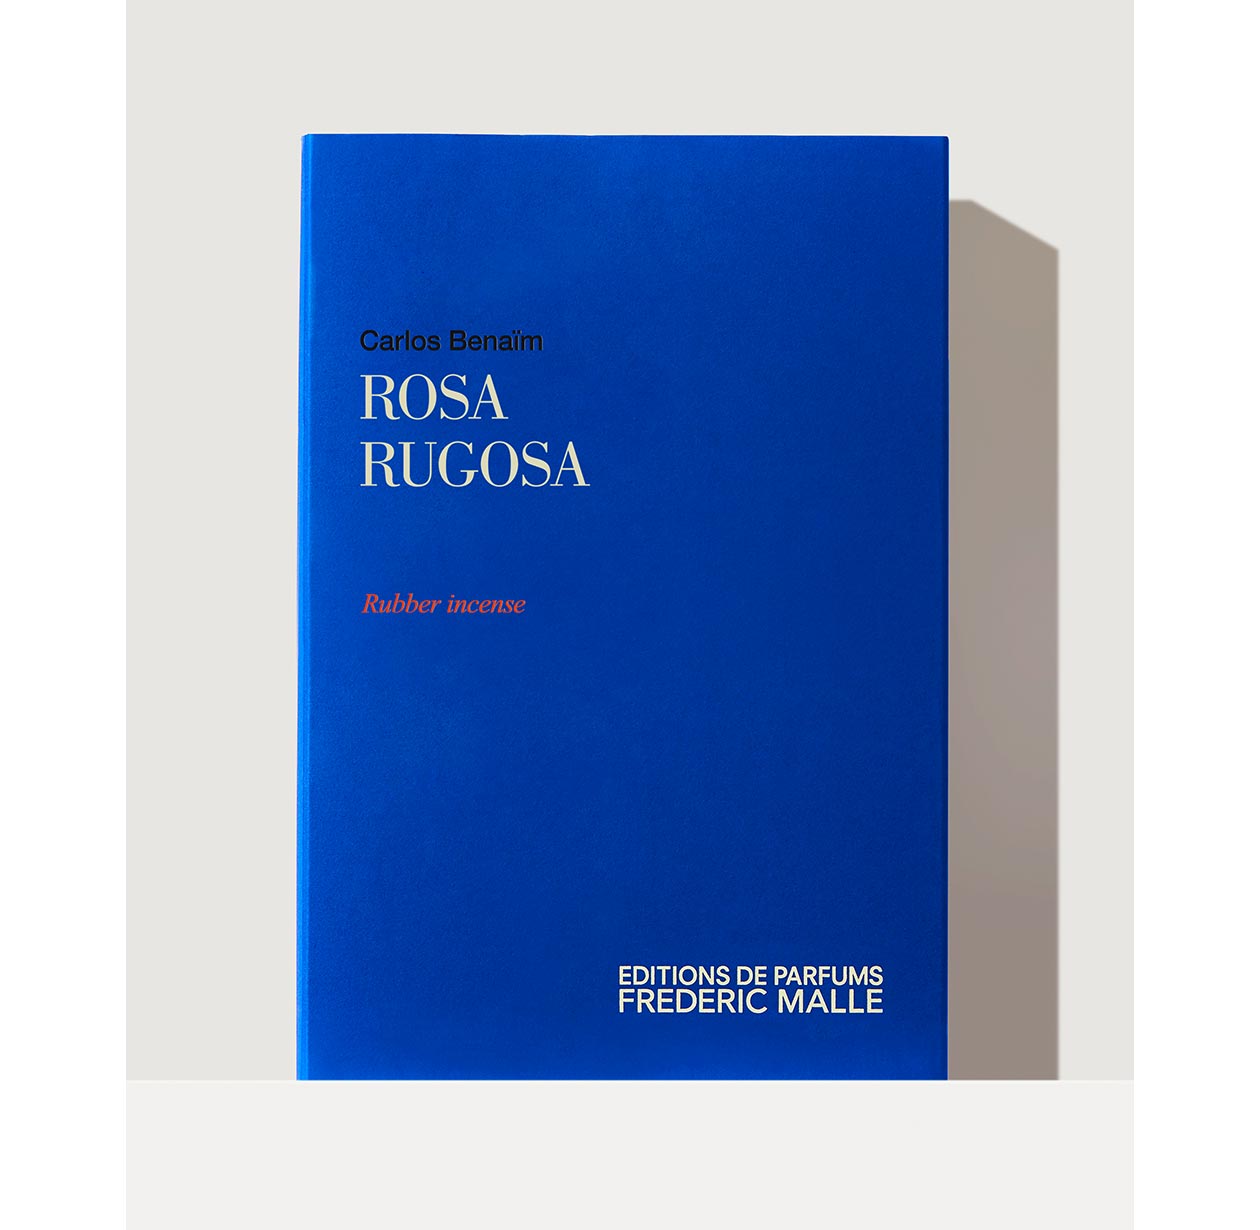 ROSA RUGOSA by Carlos Benaim - Rubber Incense